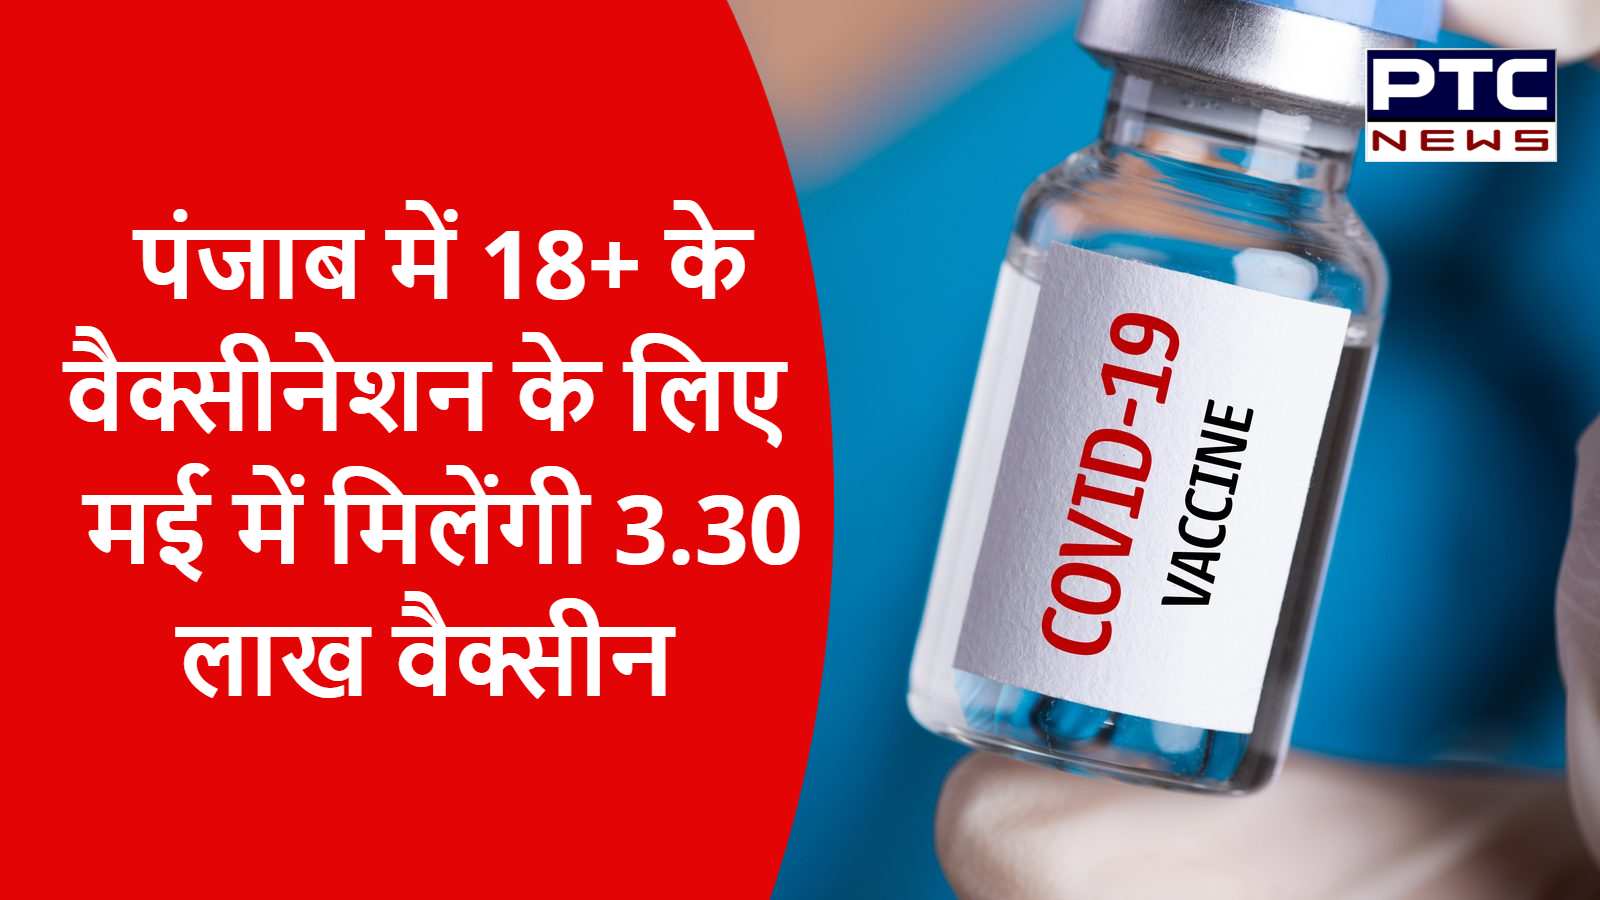 पंजाब में 18+ के वैक्सीनेशन के लिए मई में मिलेंगी 3.30 लाख वैक्सीन